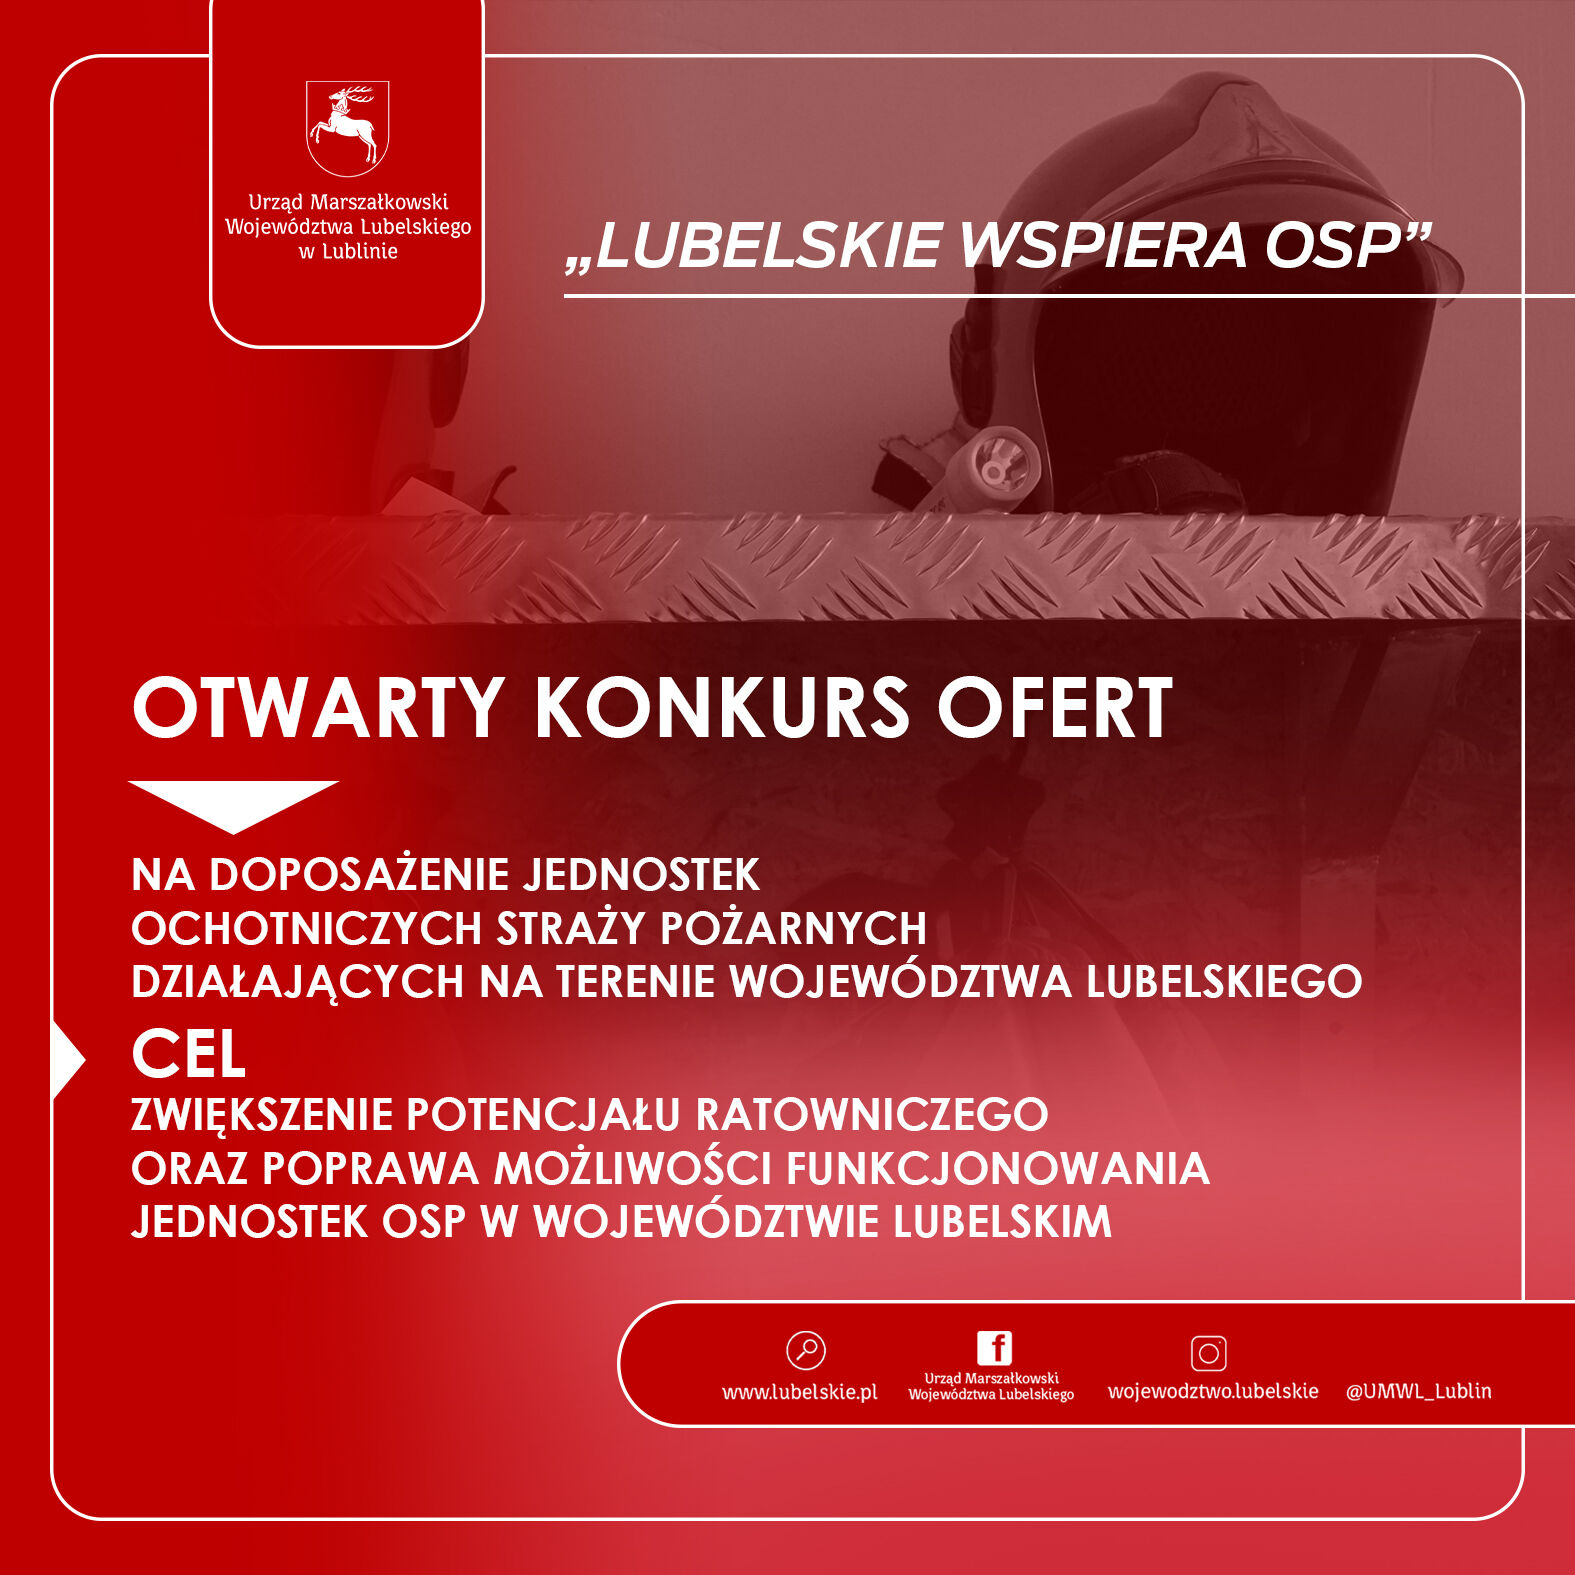 Czerwone tło z białym i czarnym tekstem. Informacje o konkursie wsparcia OSP, logo Województwa Lubelskiego i strony internetowe.